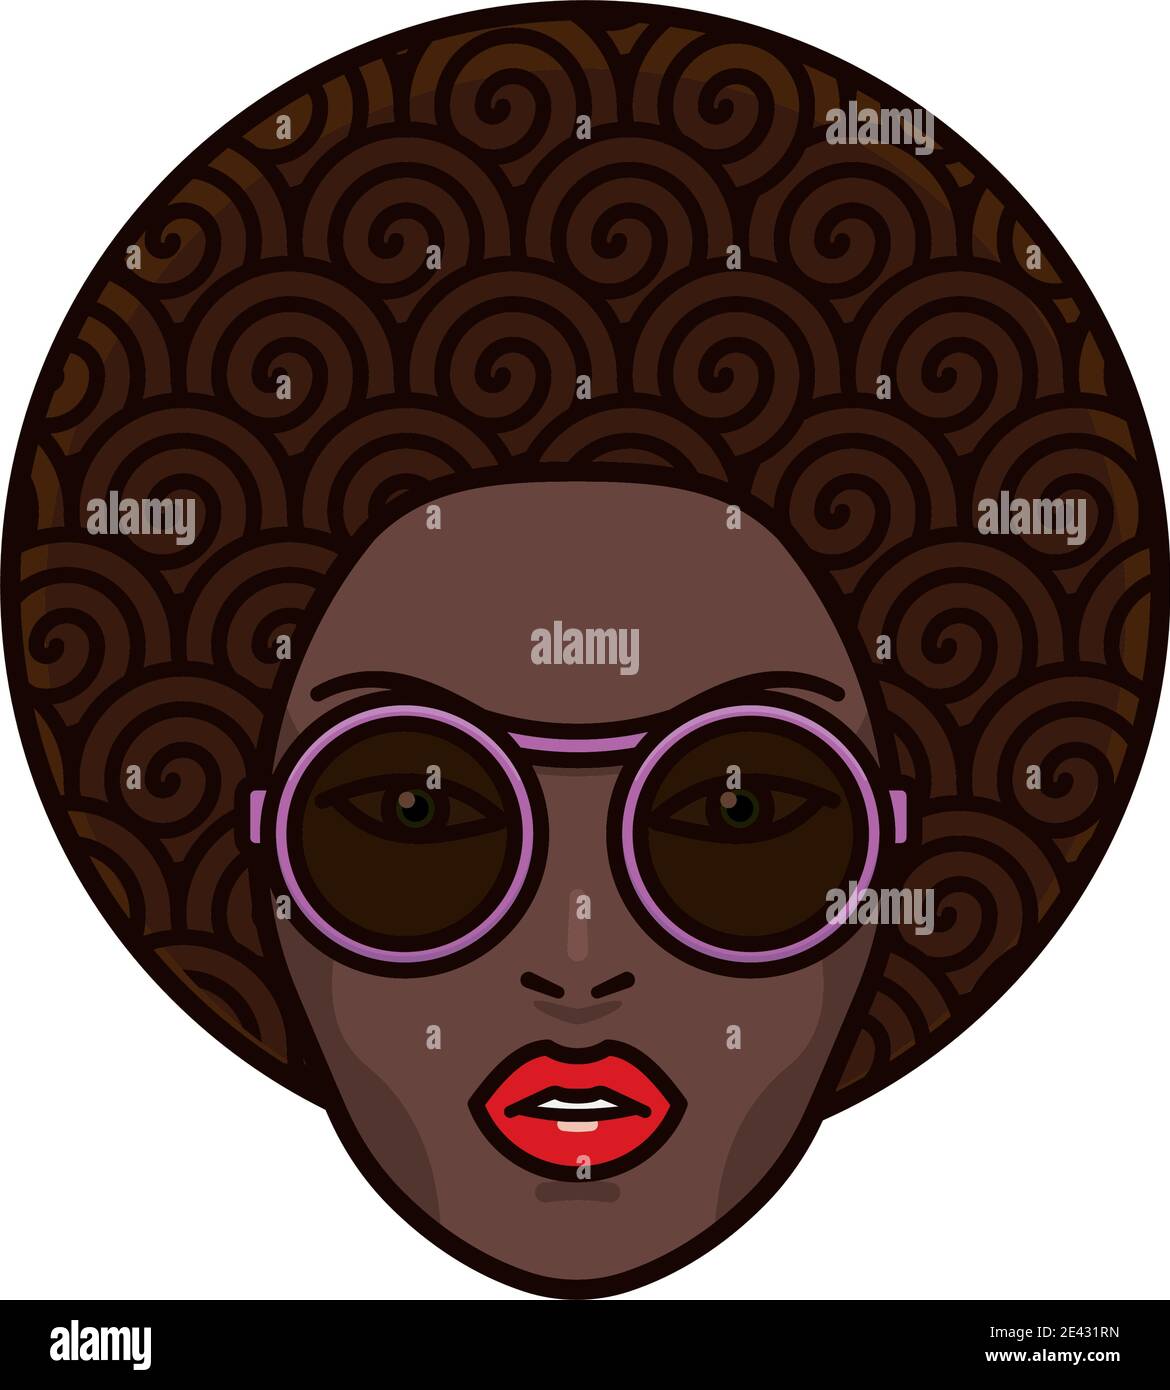 Cheveux bouclés belle femme africaine visage avec des lunettes de soleil pourpres et Illustration vectorielle isolée à lèvres rouges pour la Journée africaine du mois de septembre 15 Illustration de Vecteur